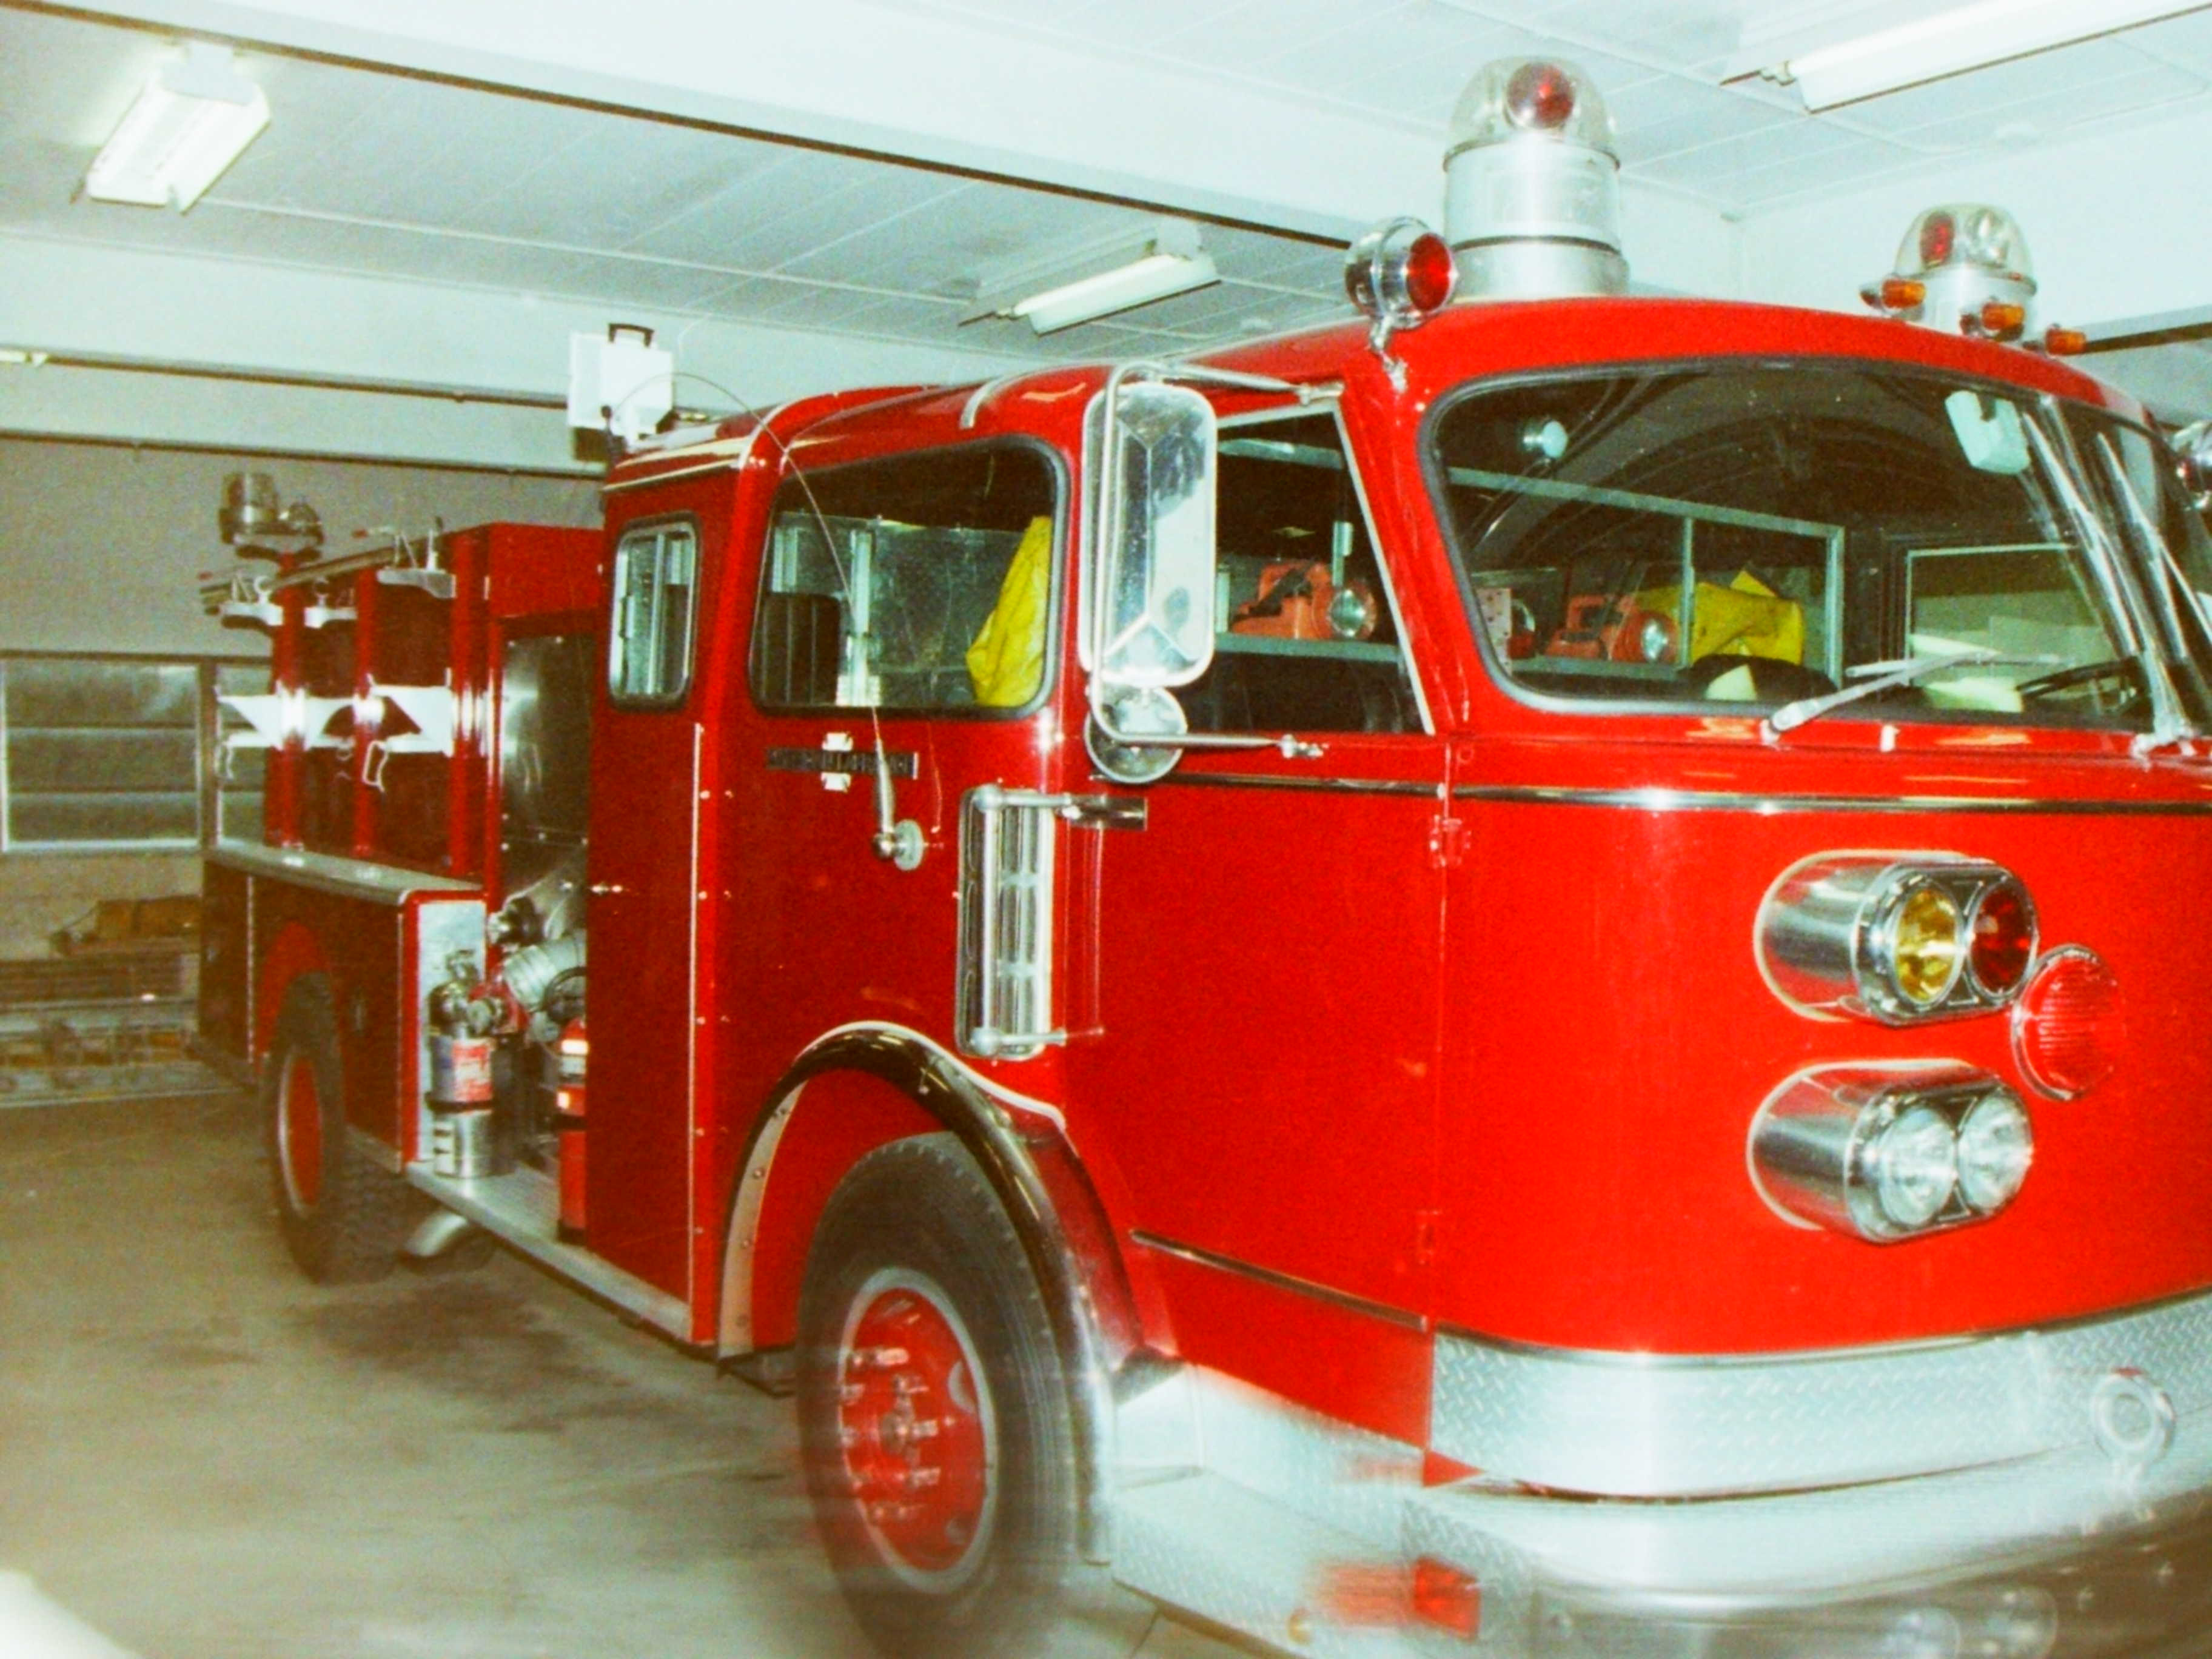 00-00-91  Response - Endwell 1991 Fires